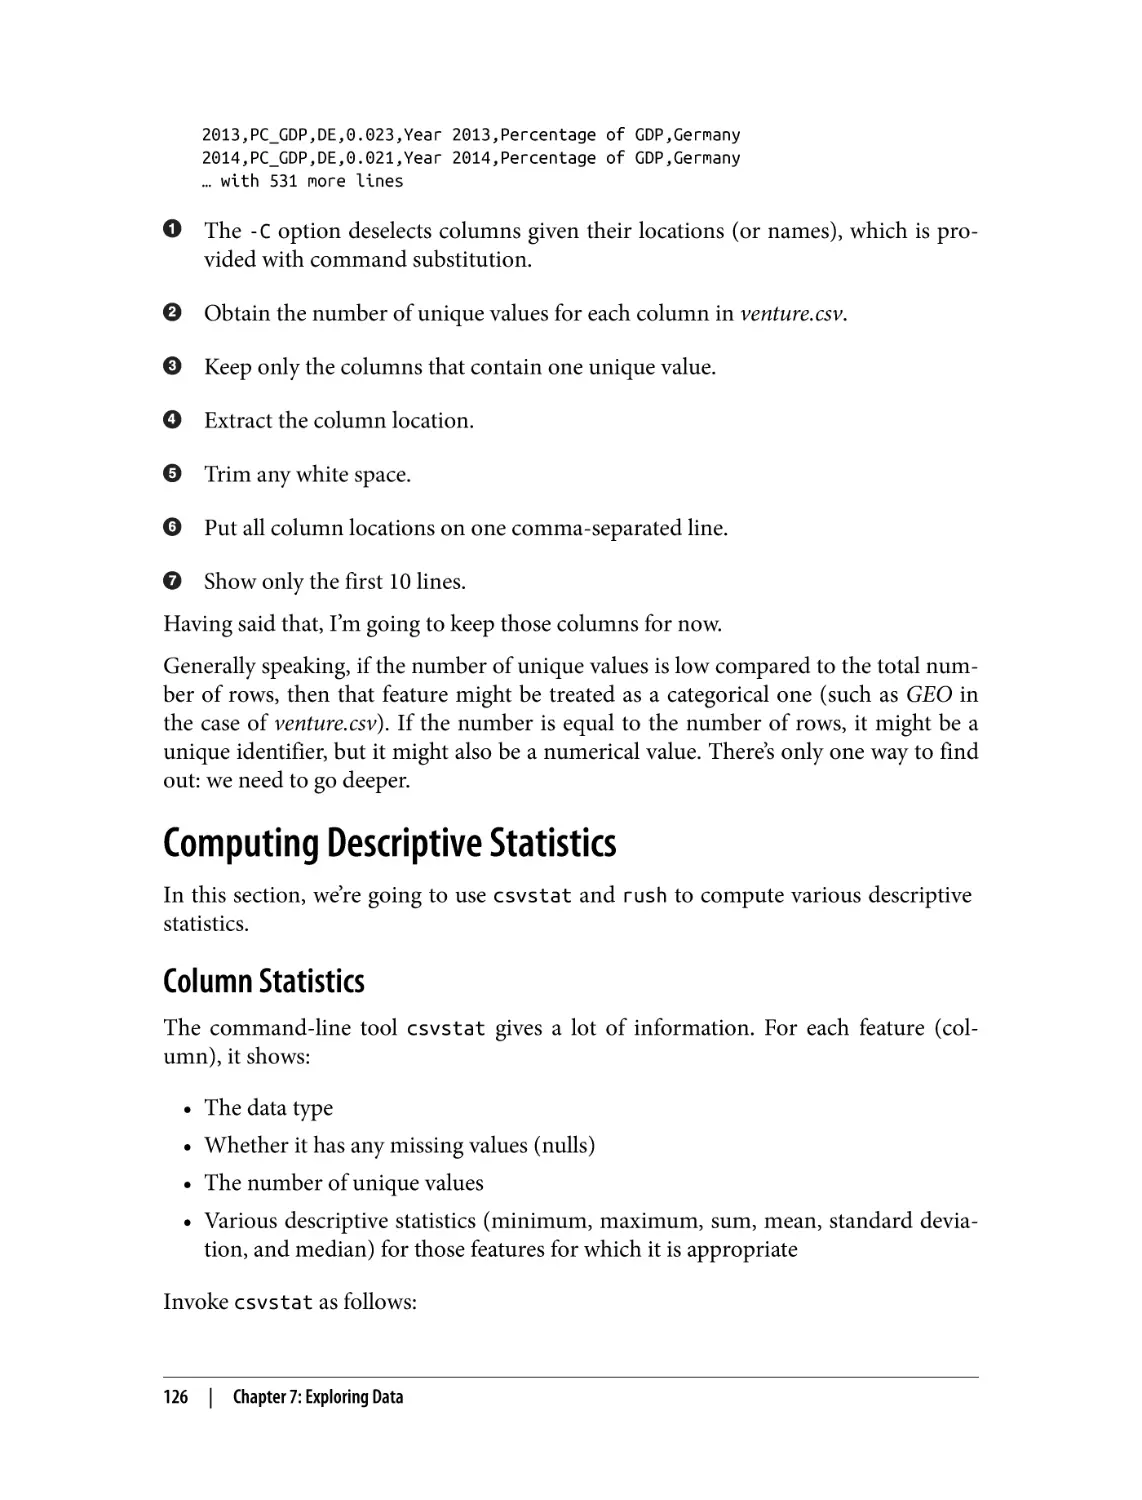 Computing Descriptive Statistics
Column Statistics